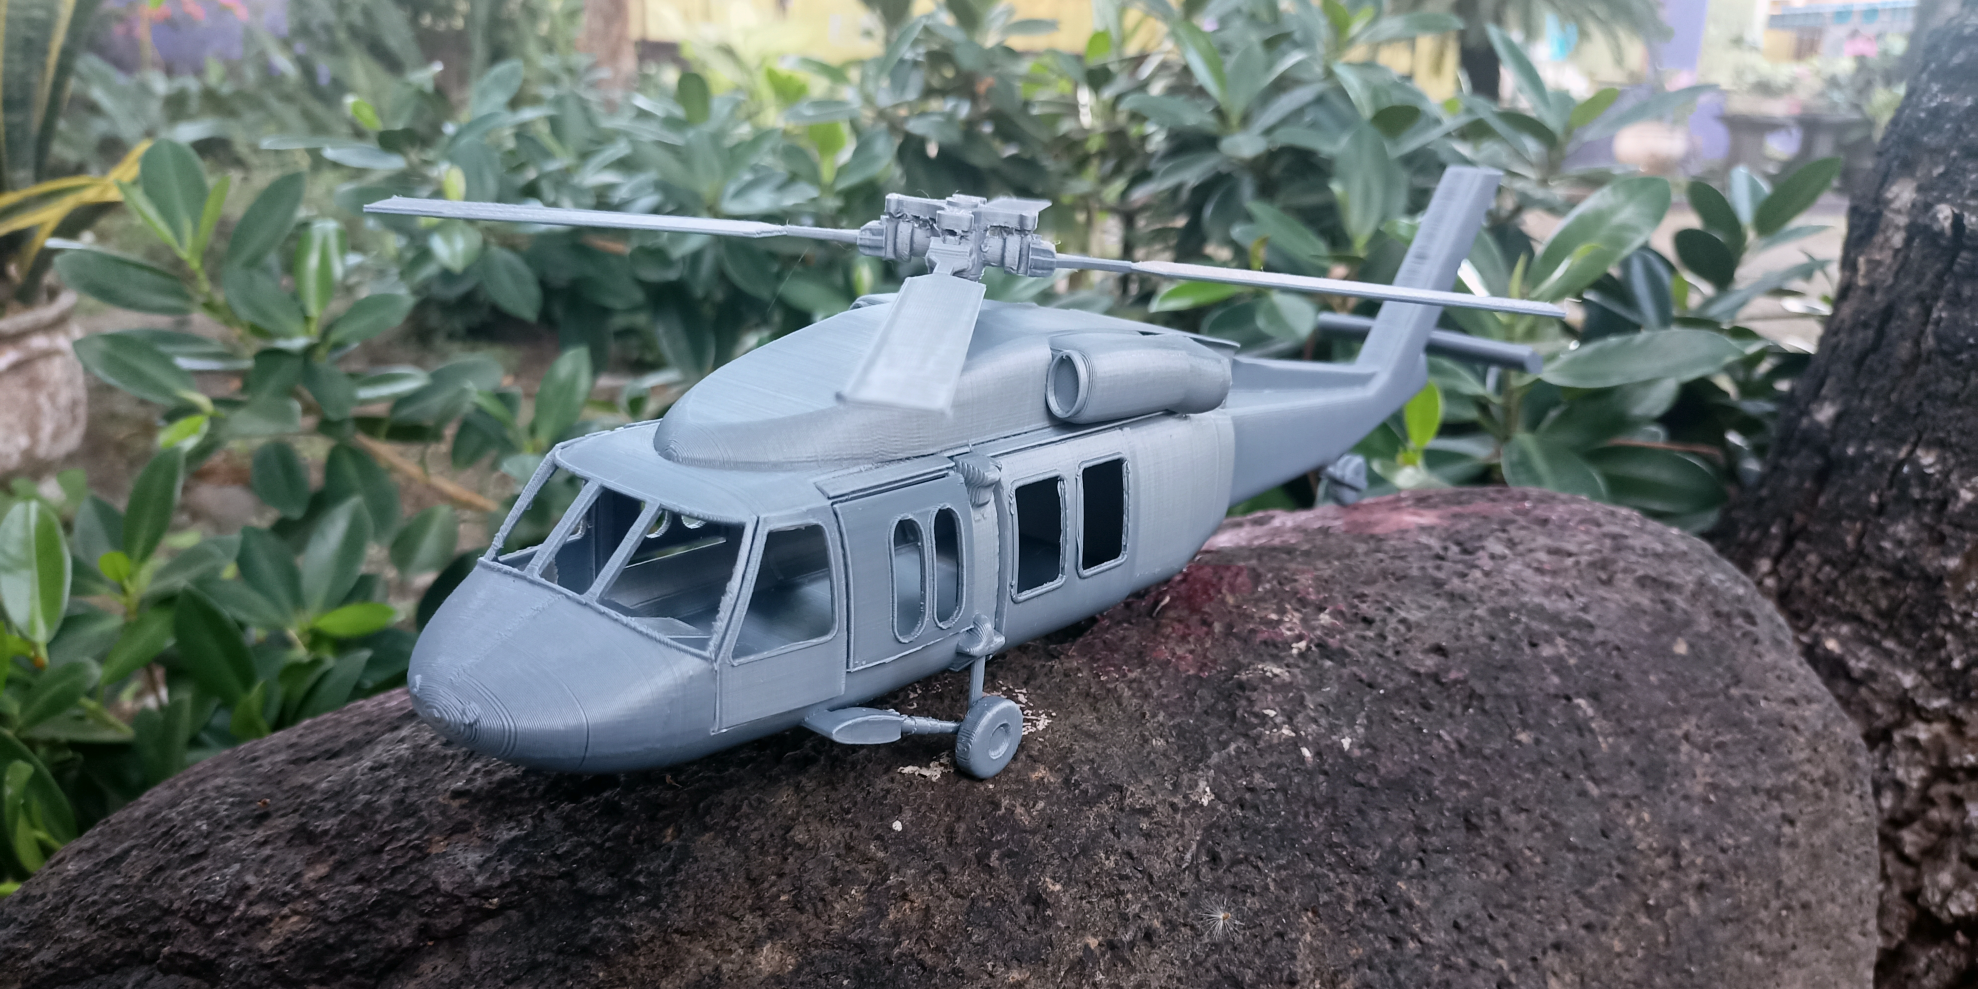 Retrouvez ici une sélection de fichiers 3D d'hélicoptères qui peuvent être réalisés avec une imprimante 3D.